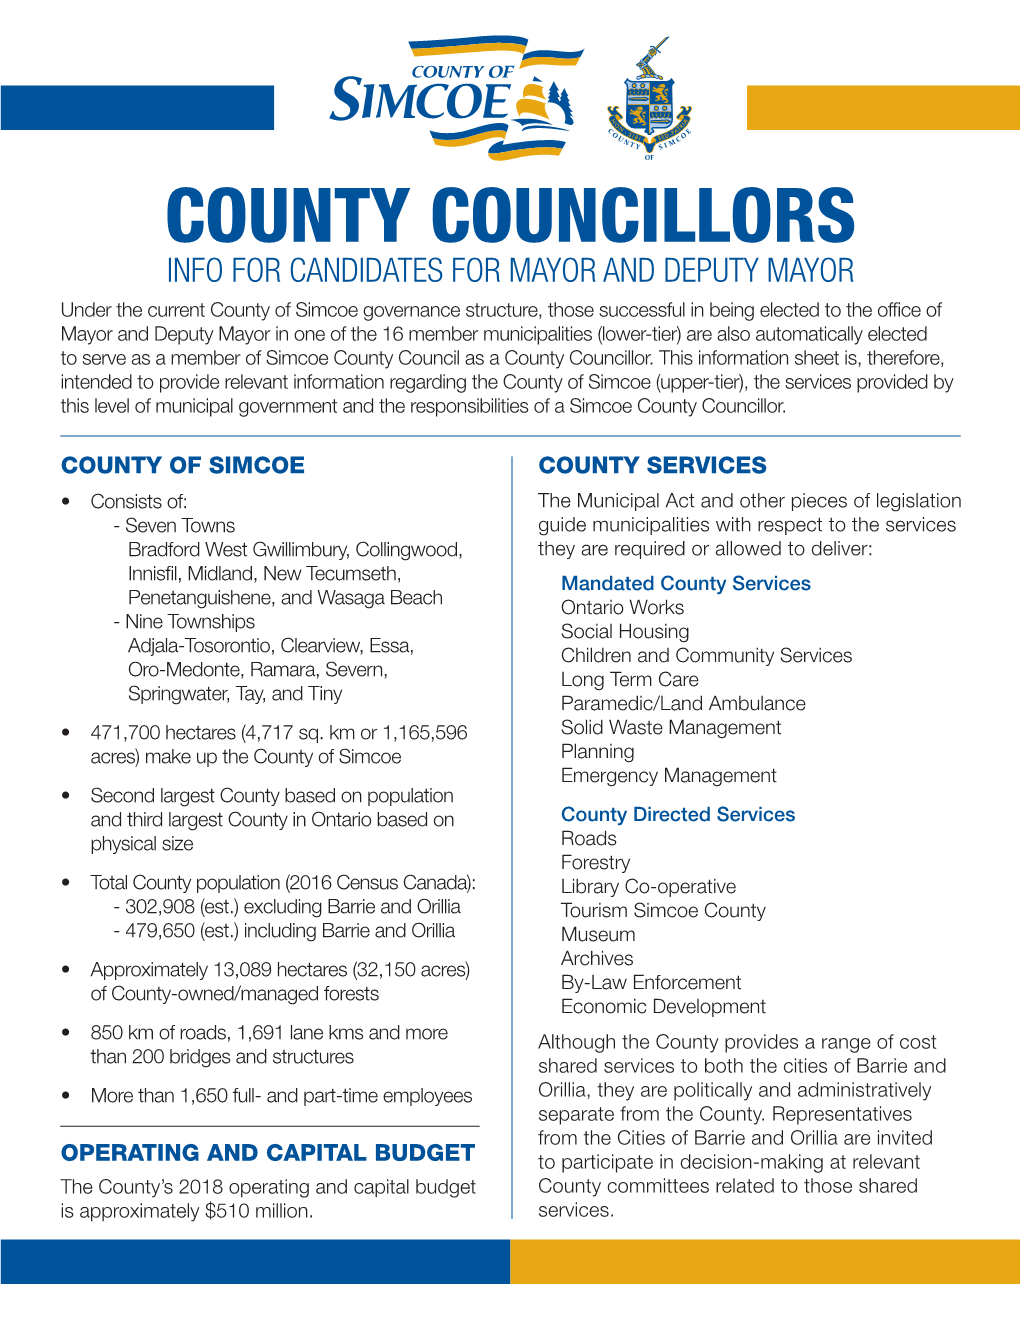 County Councillors